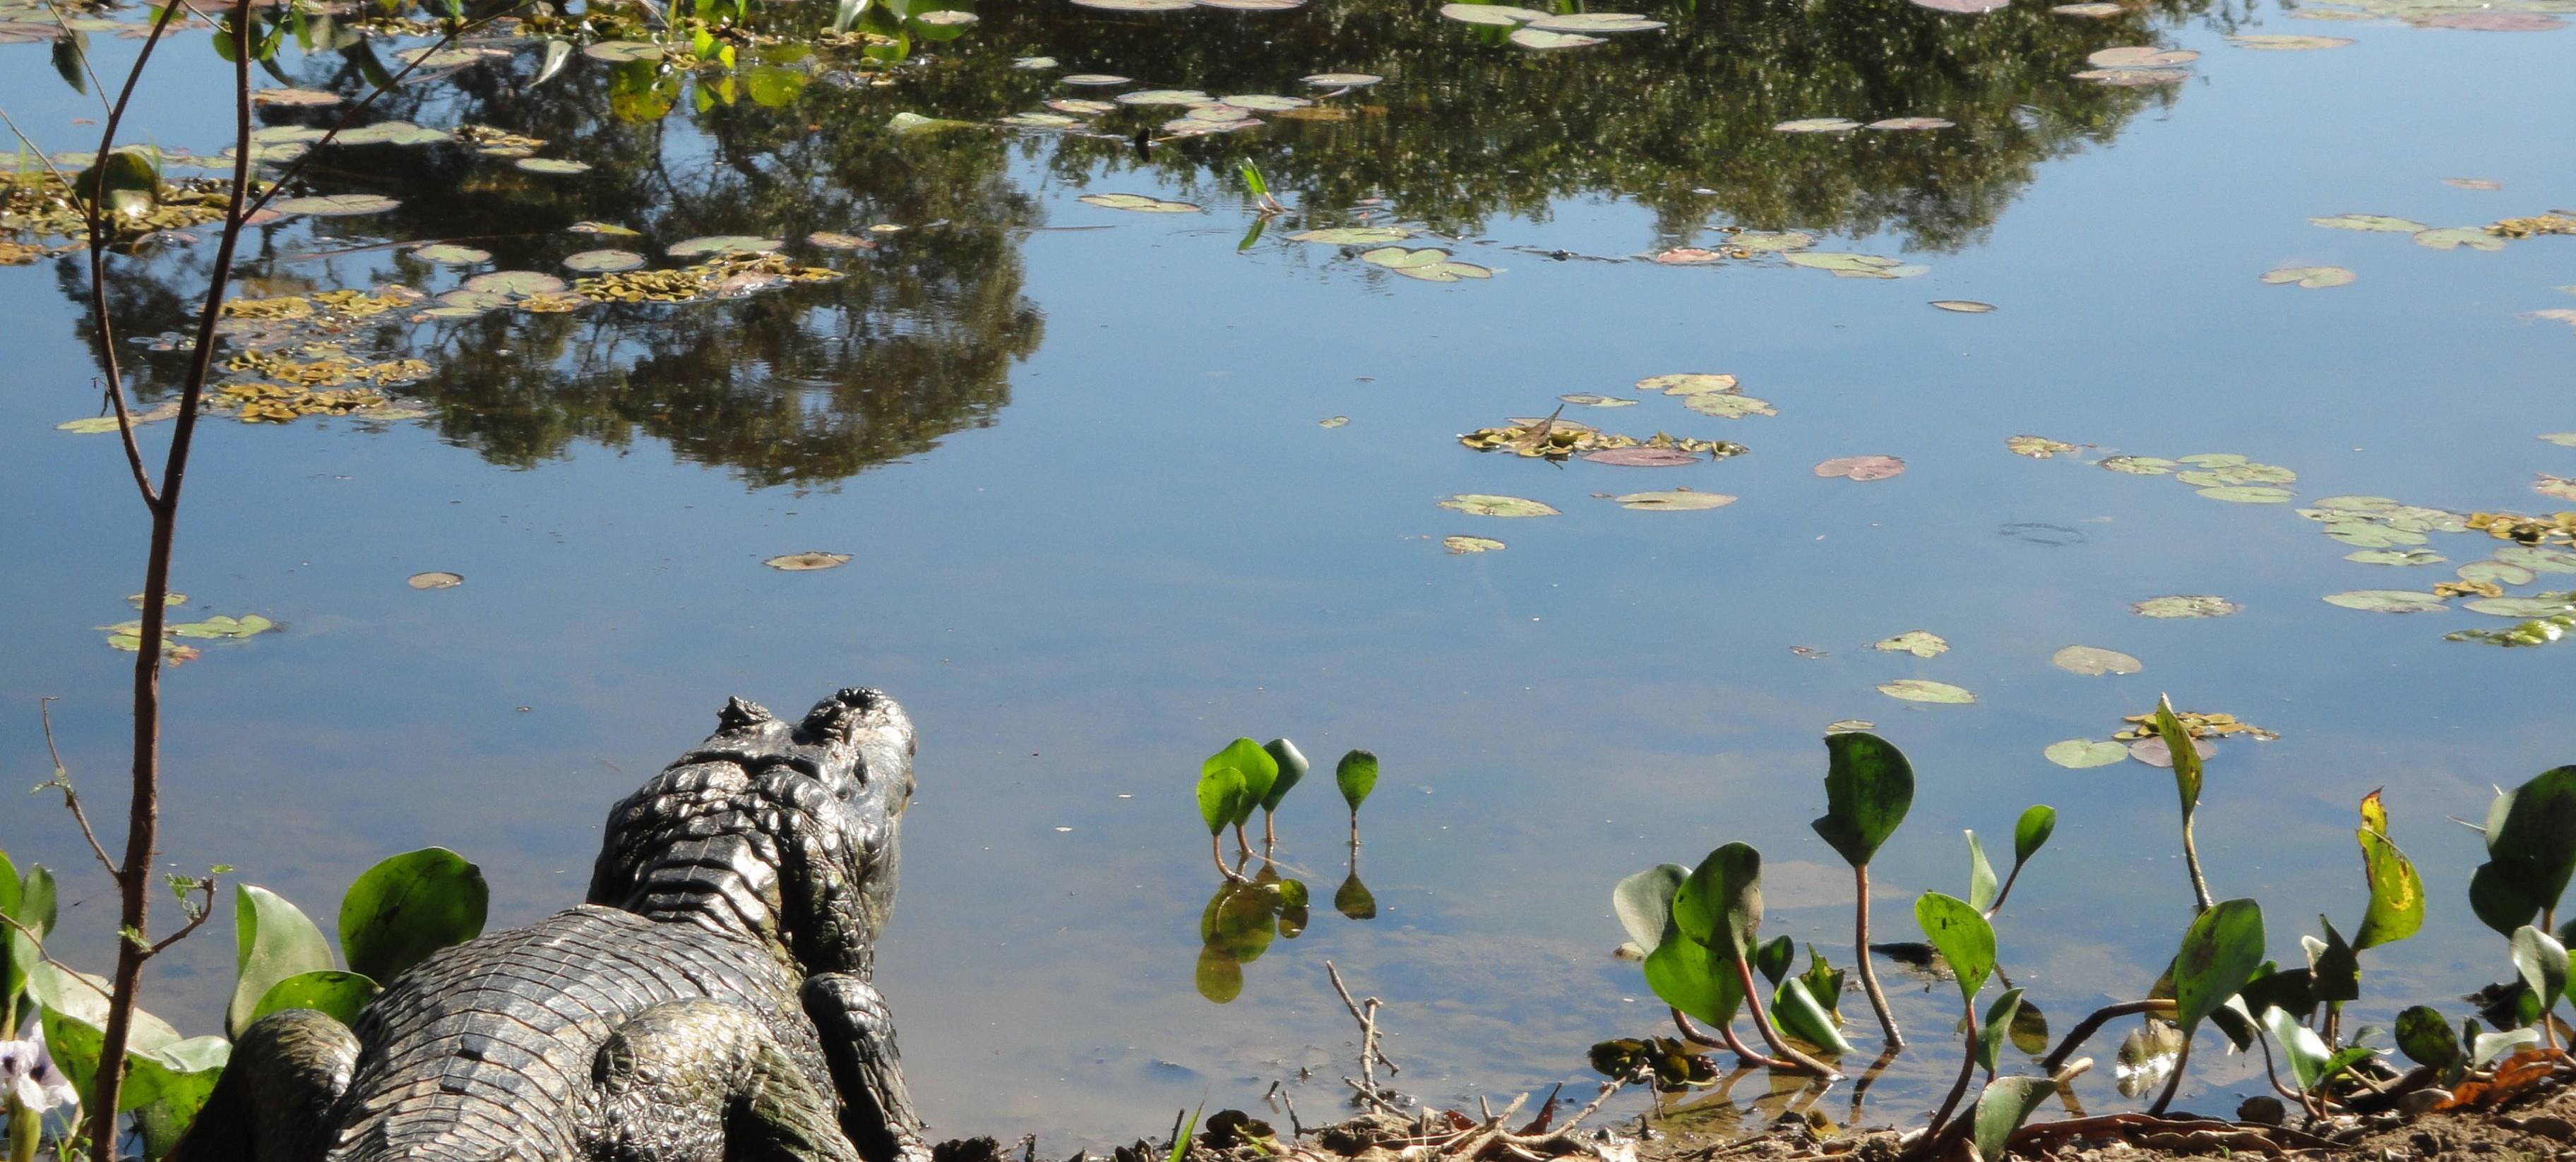 Votre aventure dans le Paradis écologique du Pantanal !